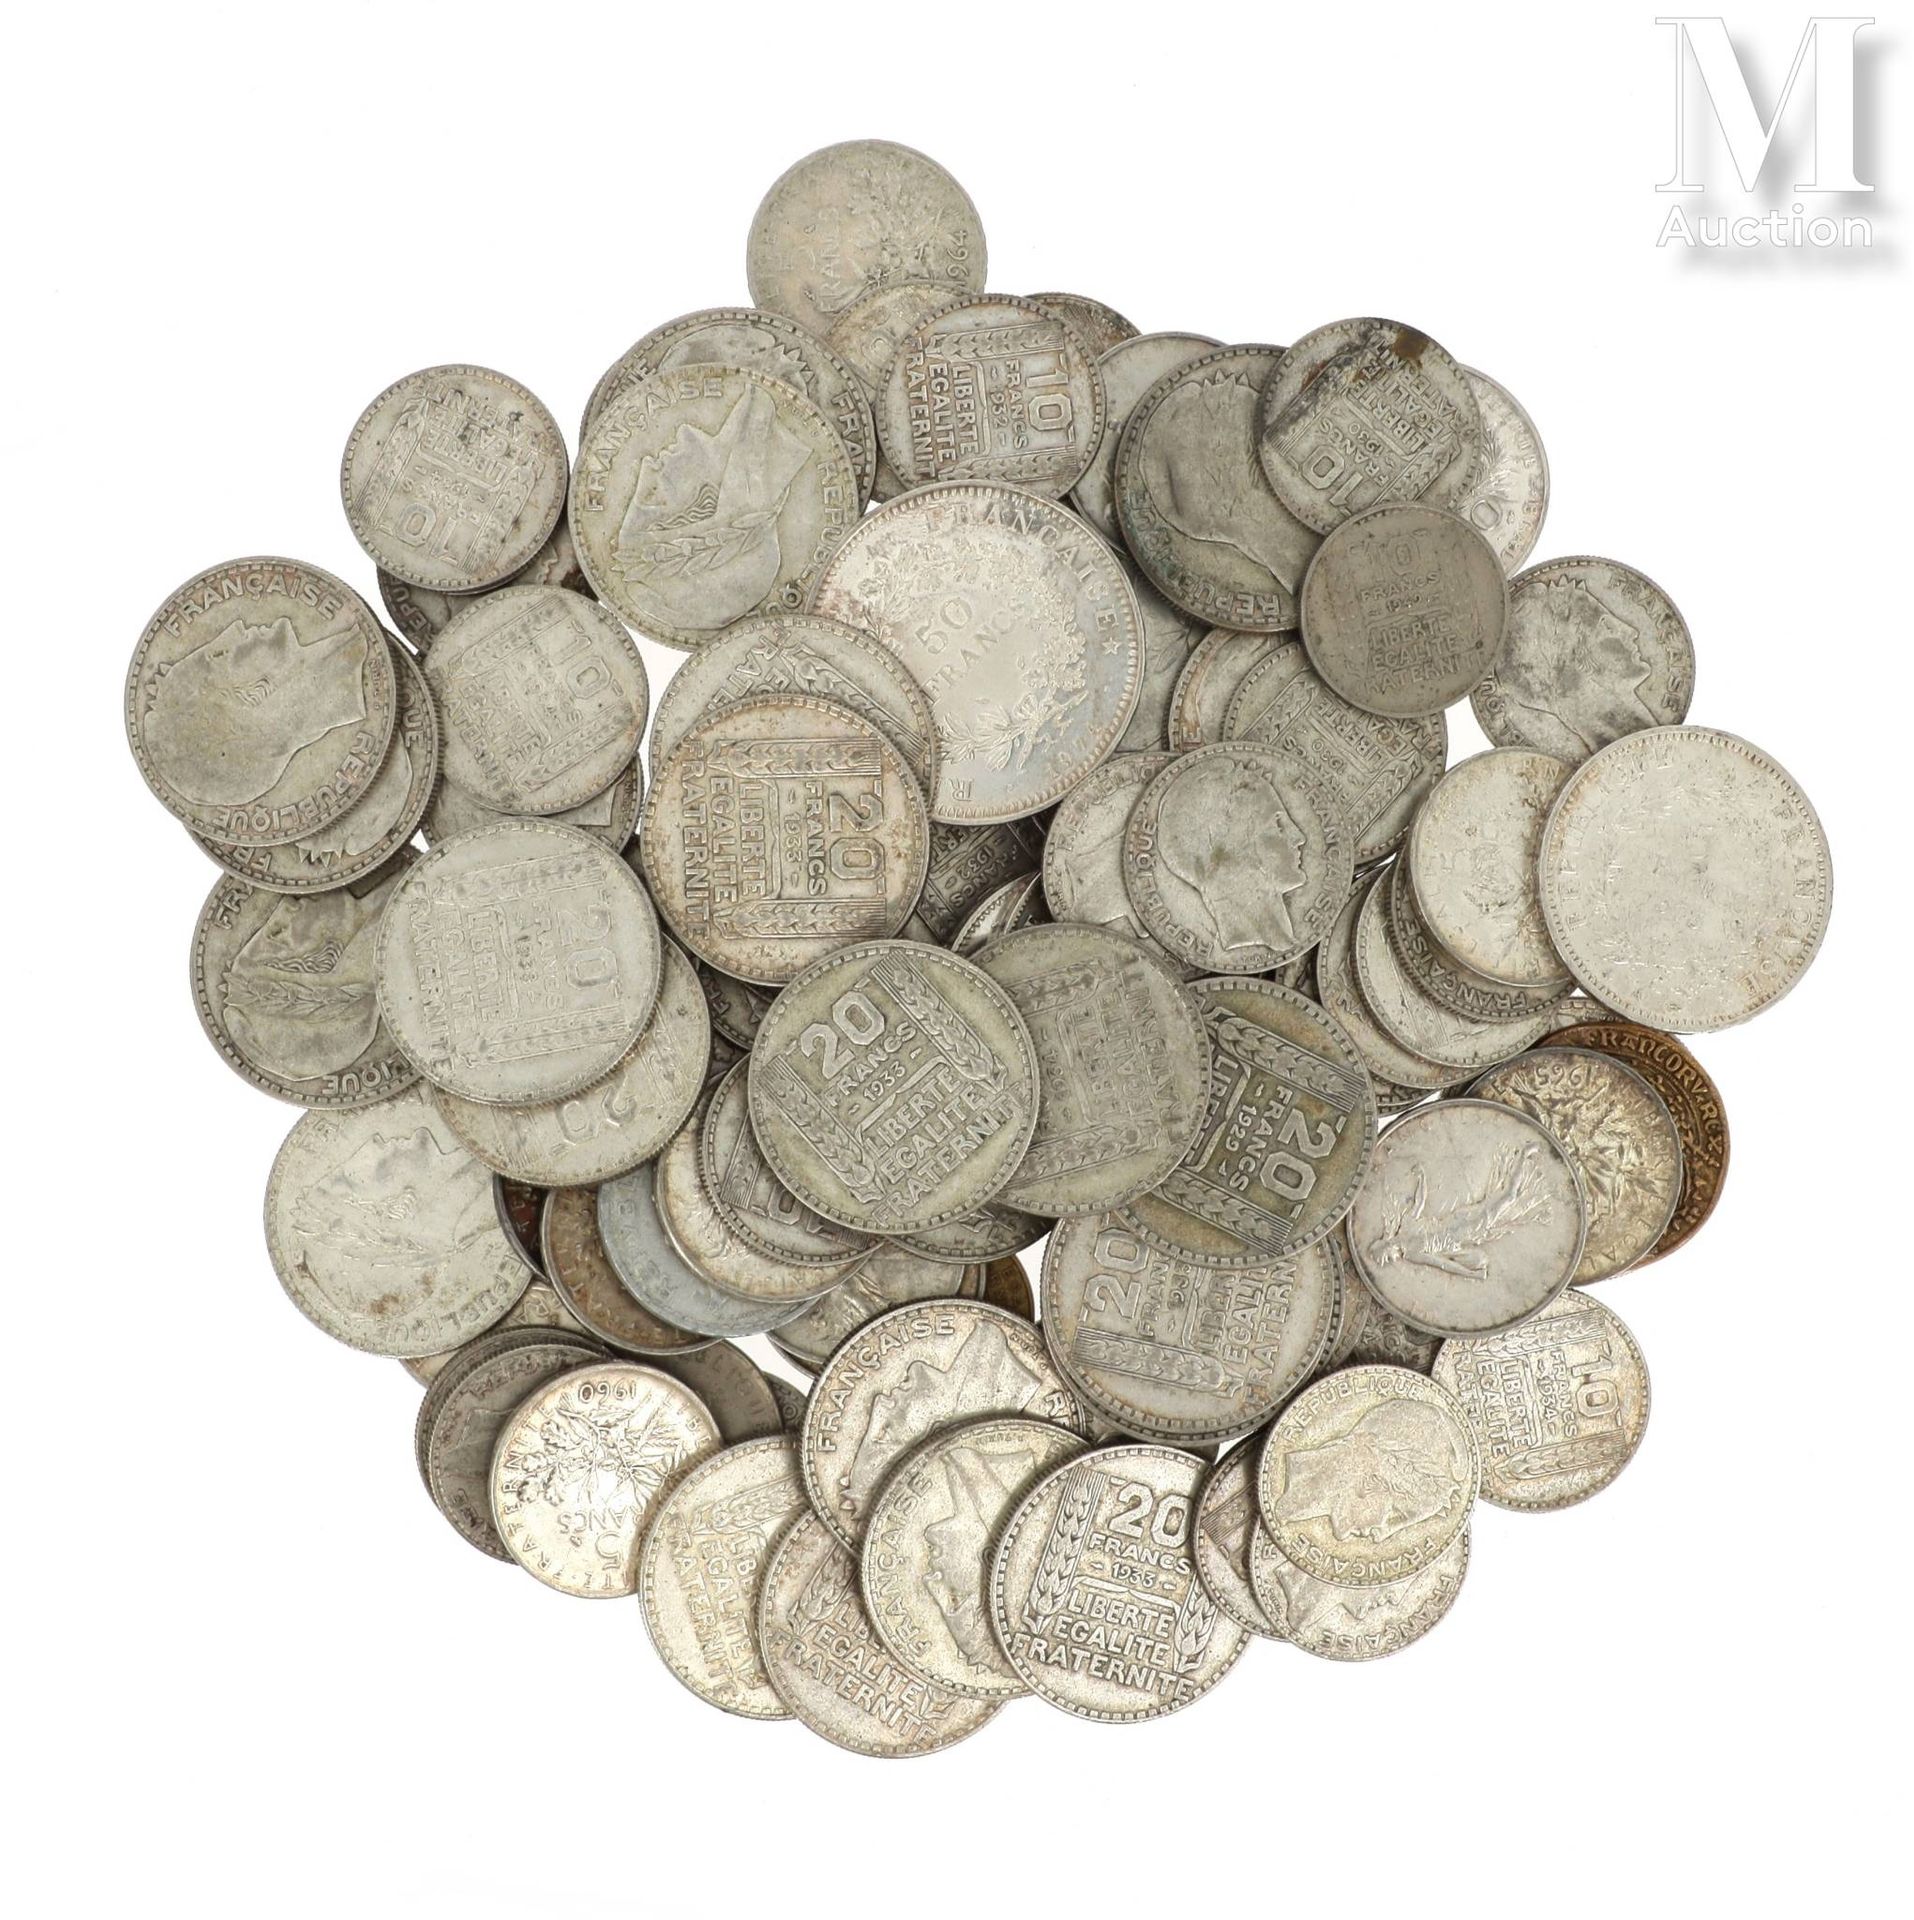 LOT DE PIECES DE MONNAIE EN ARGENT 一批银币包括:

- 1 x 100 FF Marie Curie 1981

- 1 x&hellip;